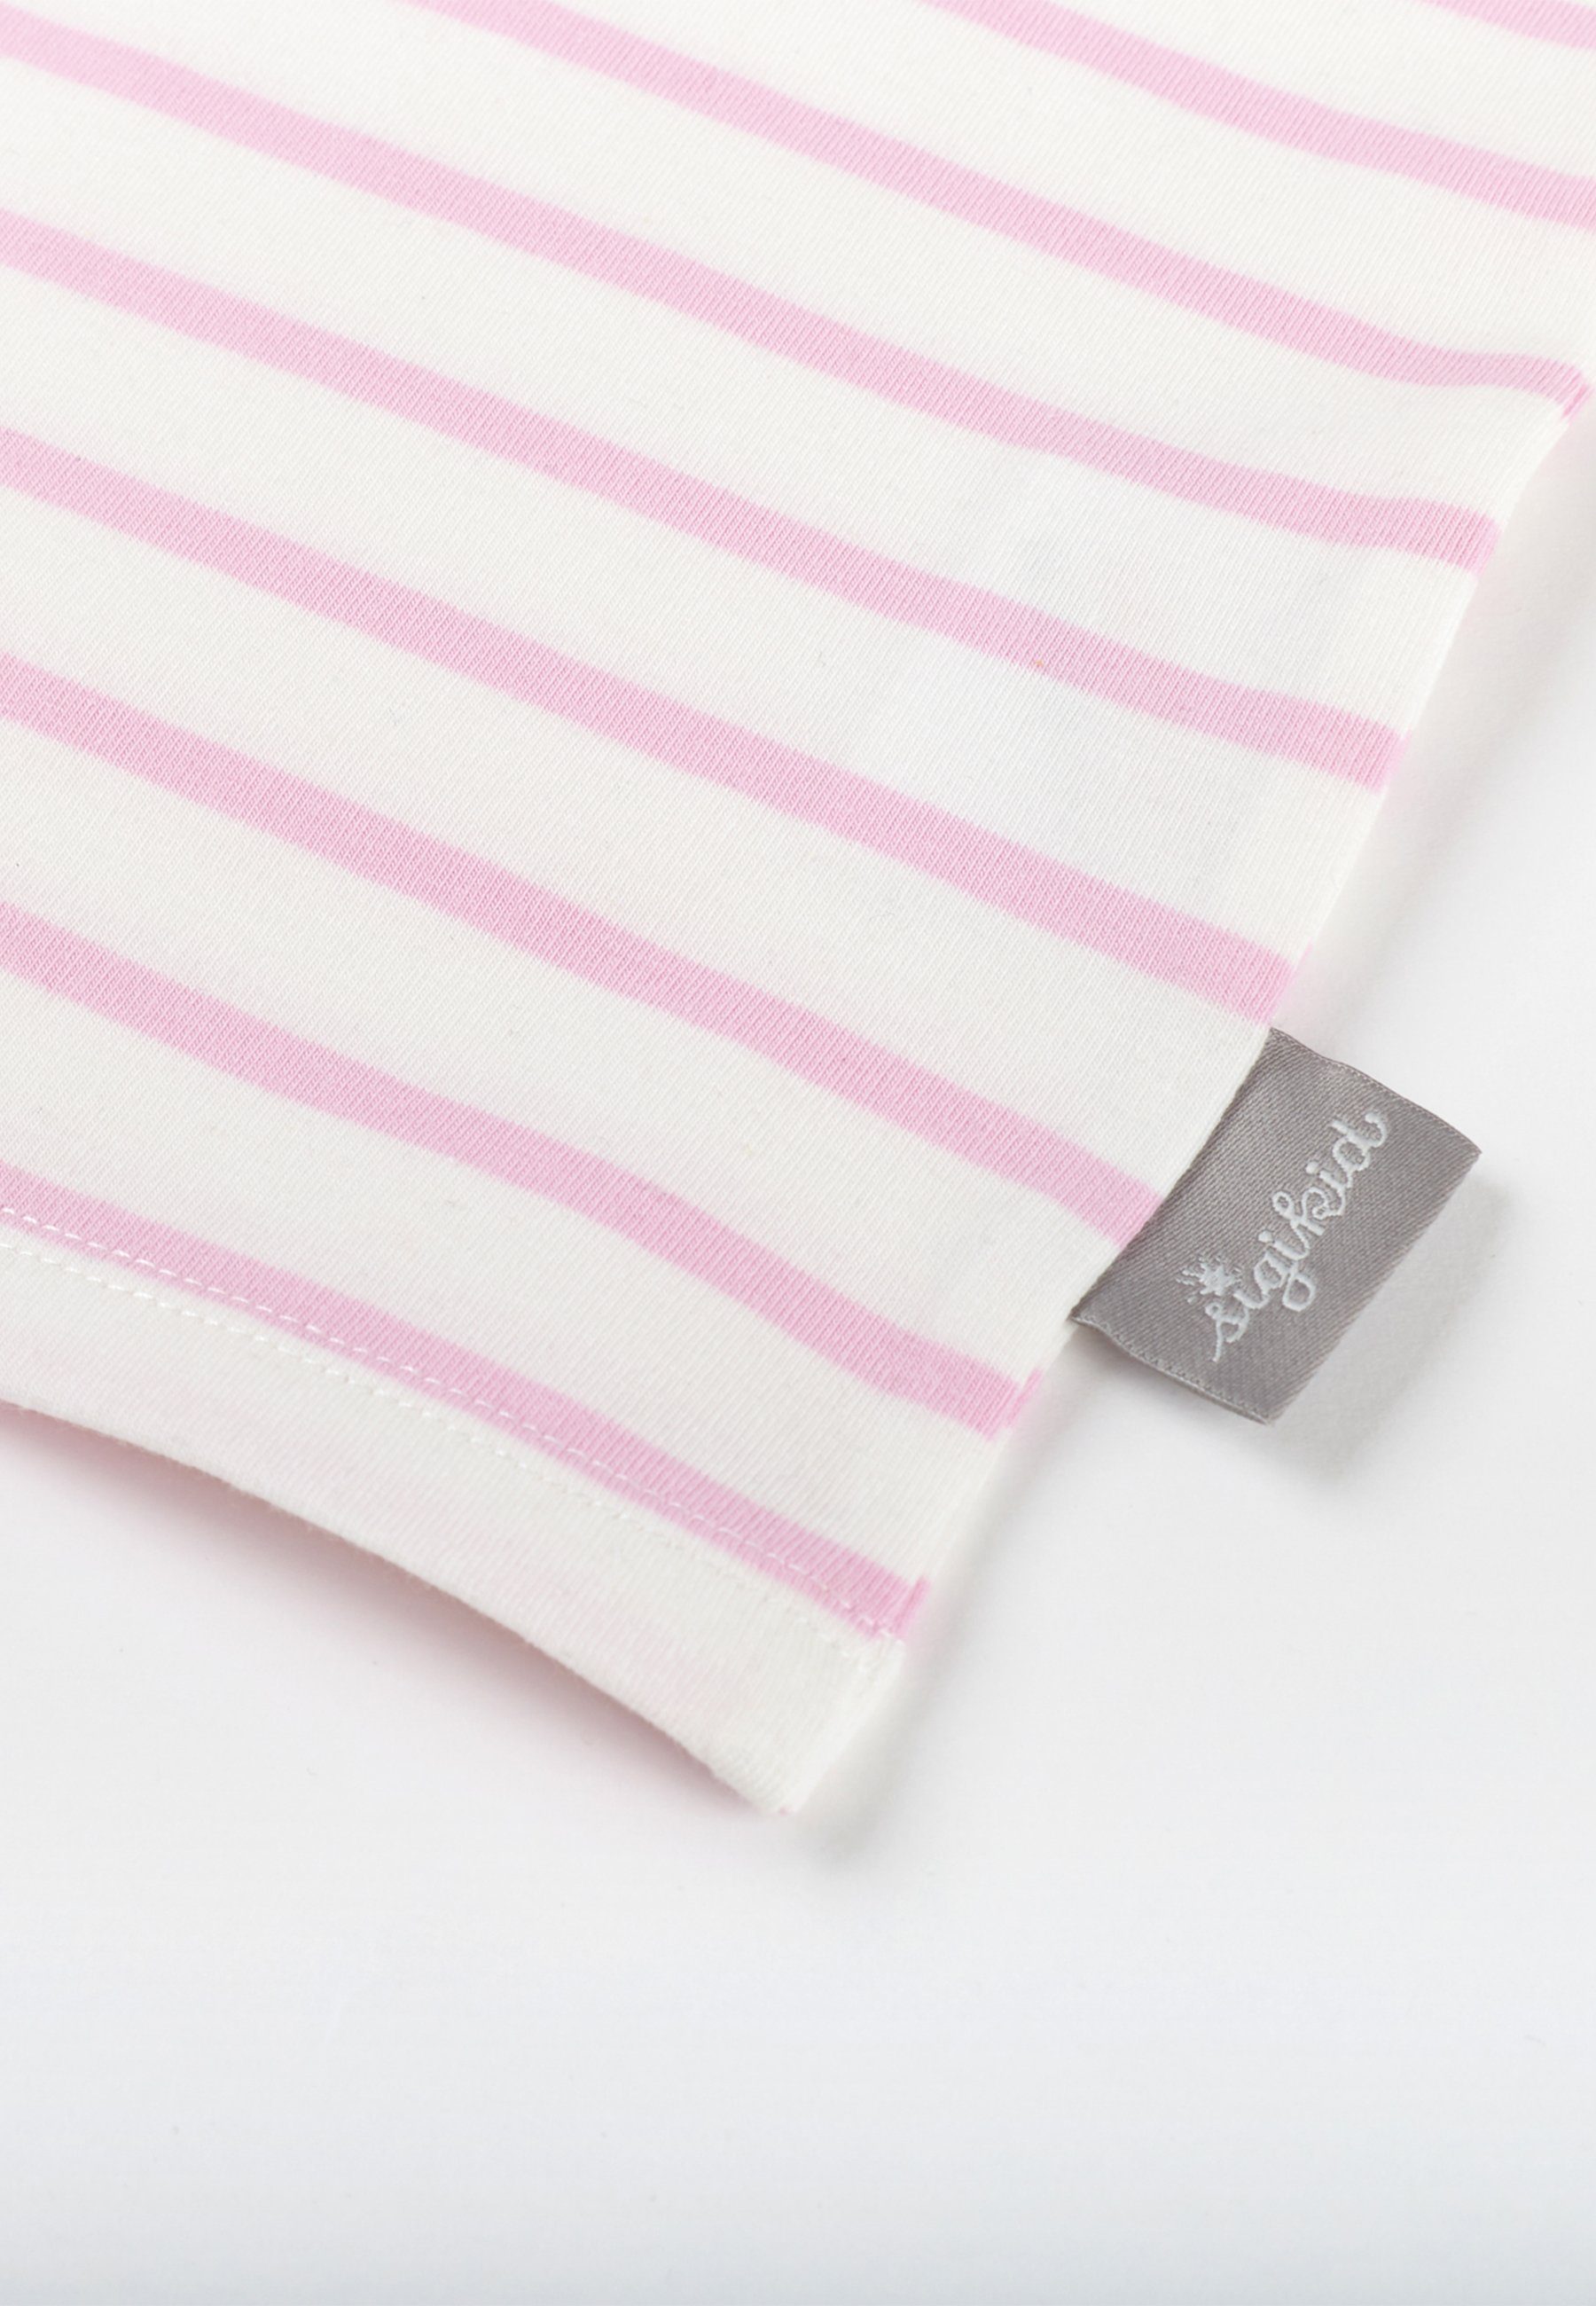 Unterhemd (2-St) Sigikid Set rosa Kinderunterwäsche Unterwäsche